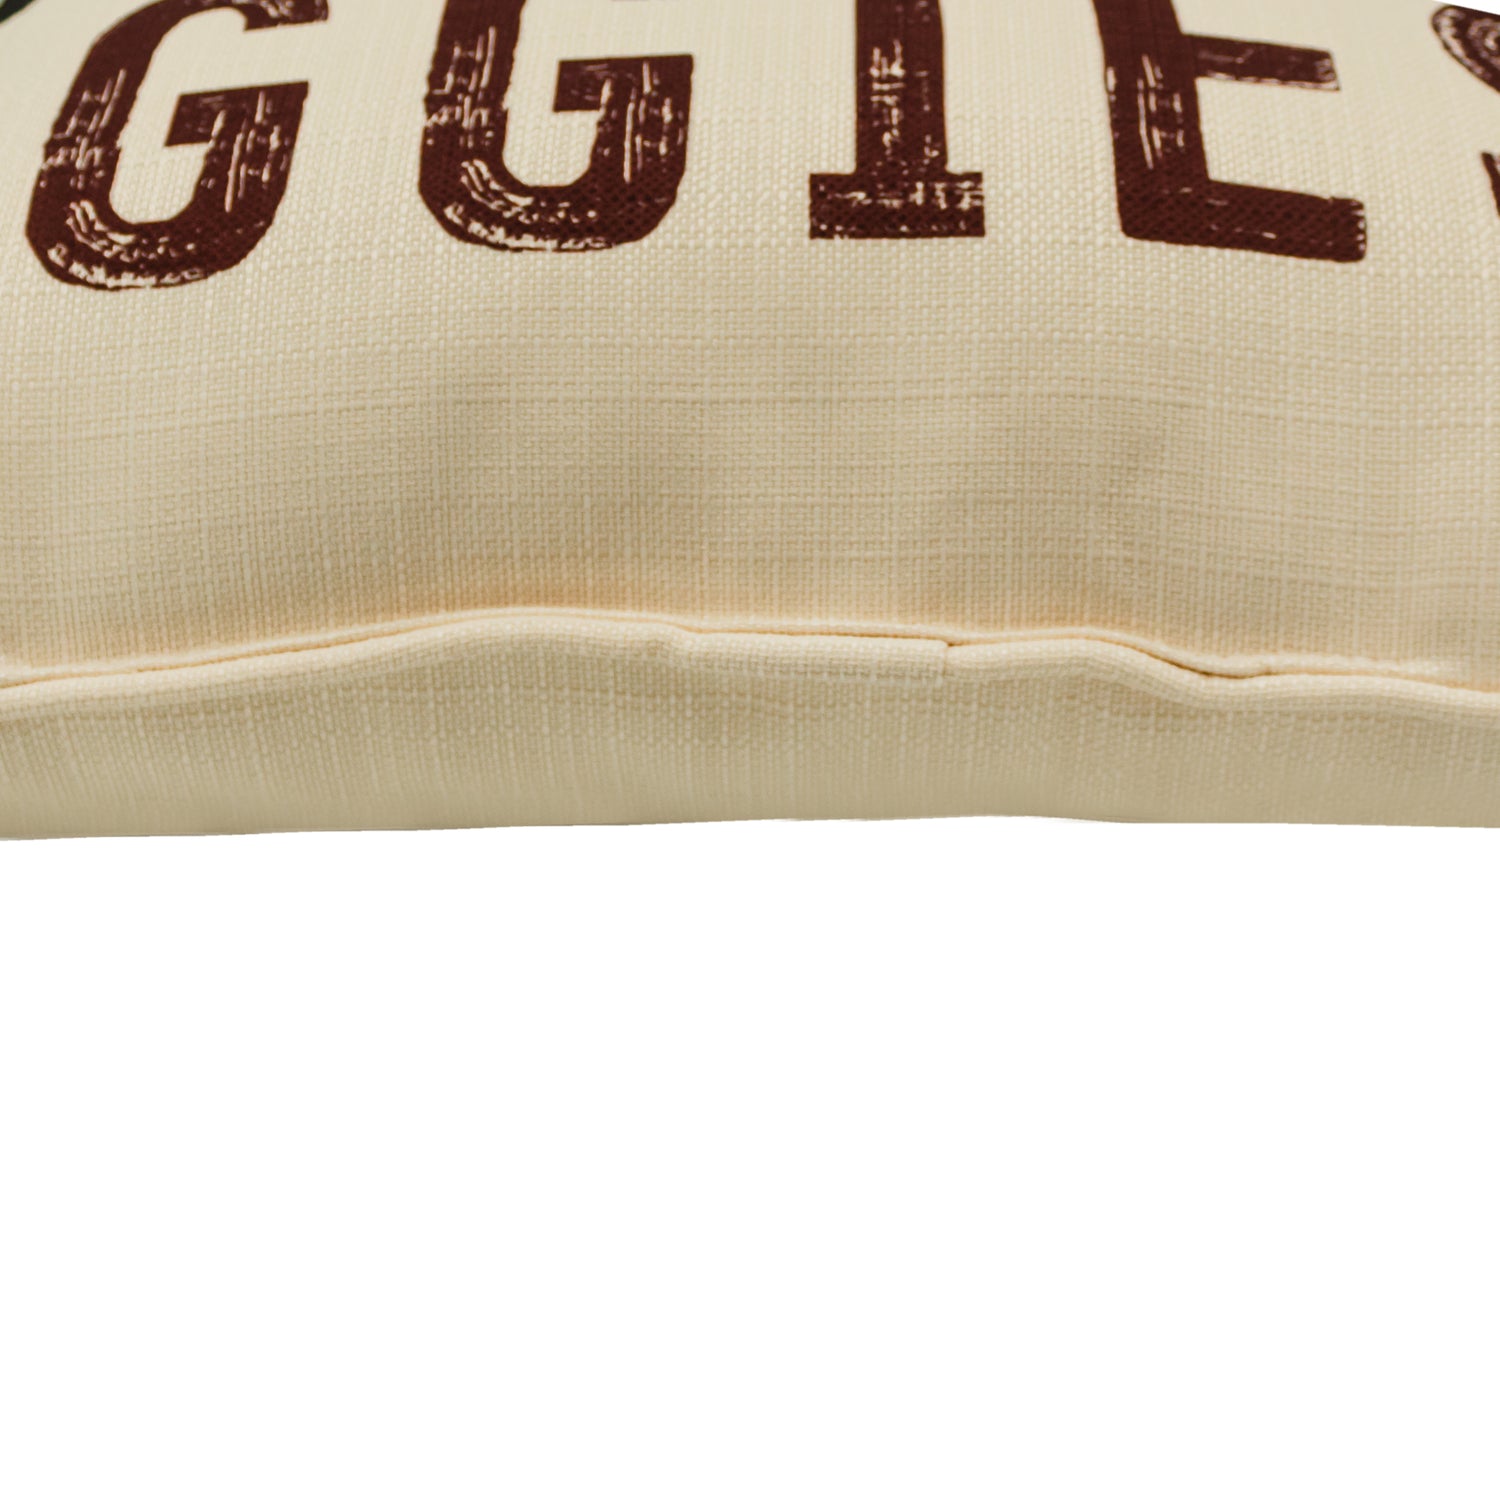 Gig 'Em Aggies Pillow